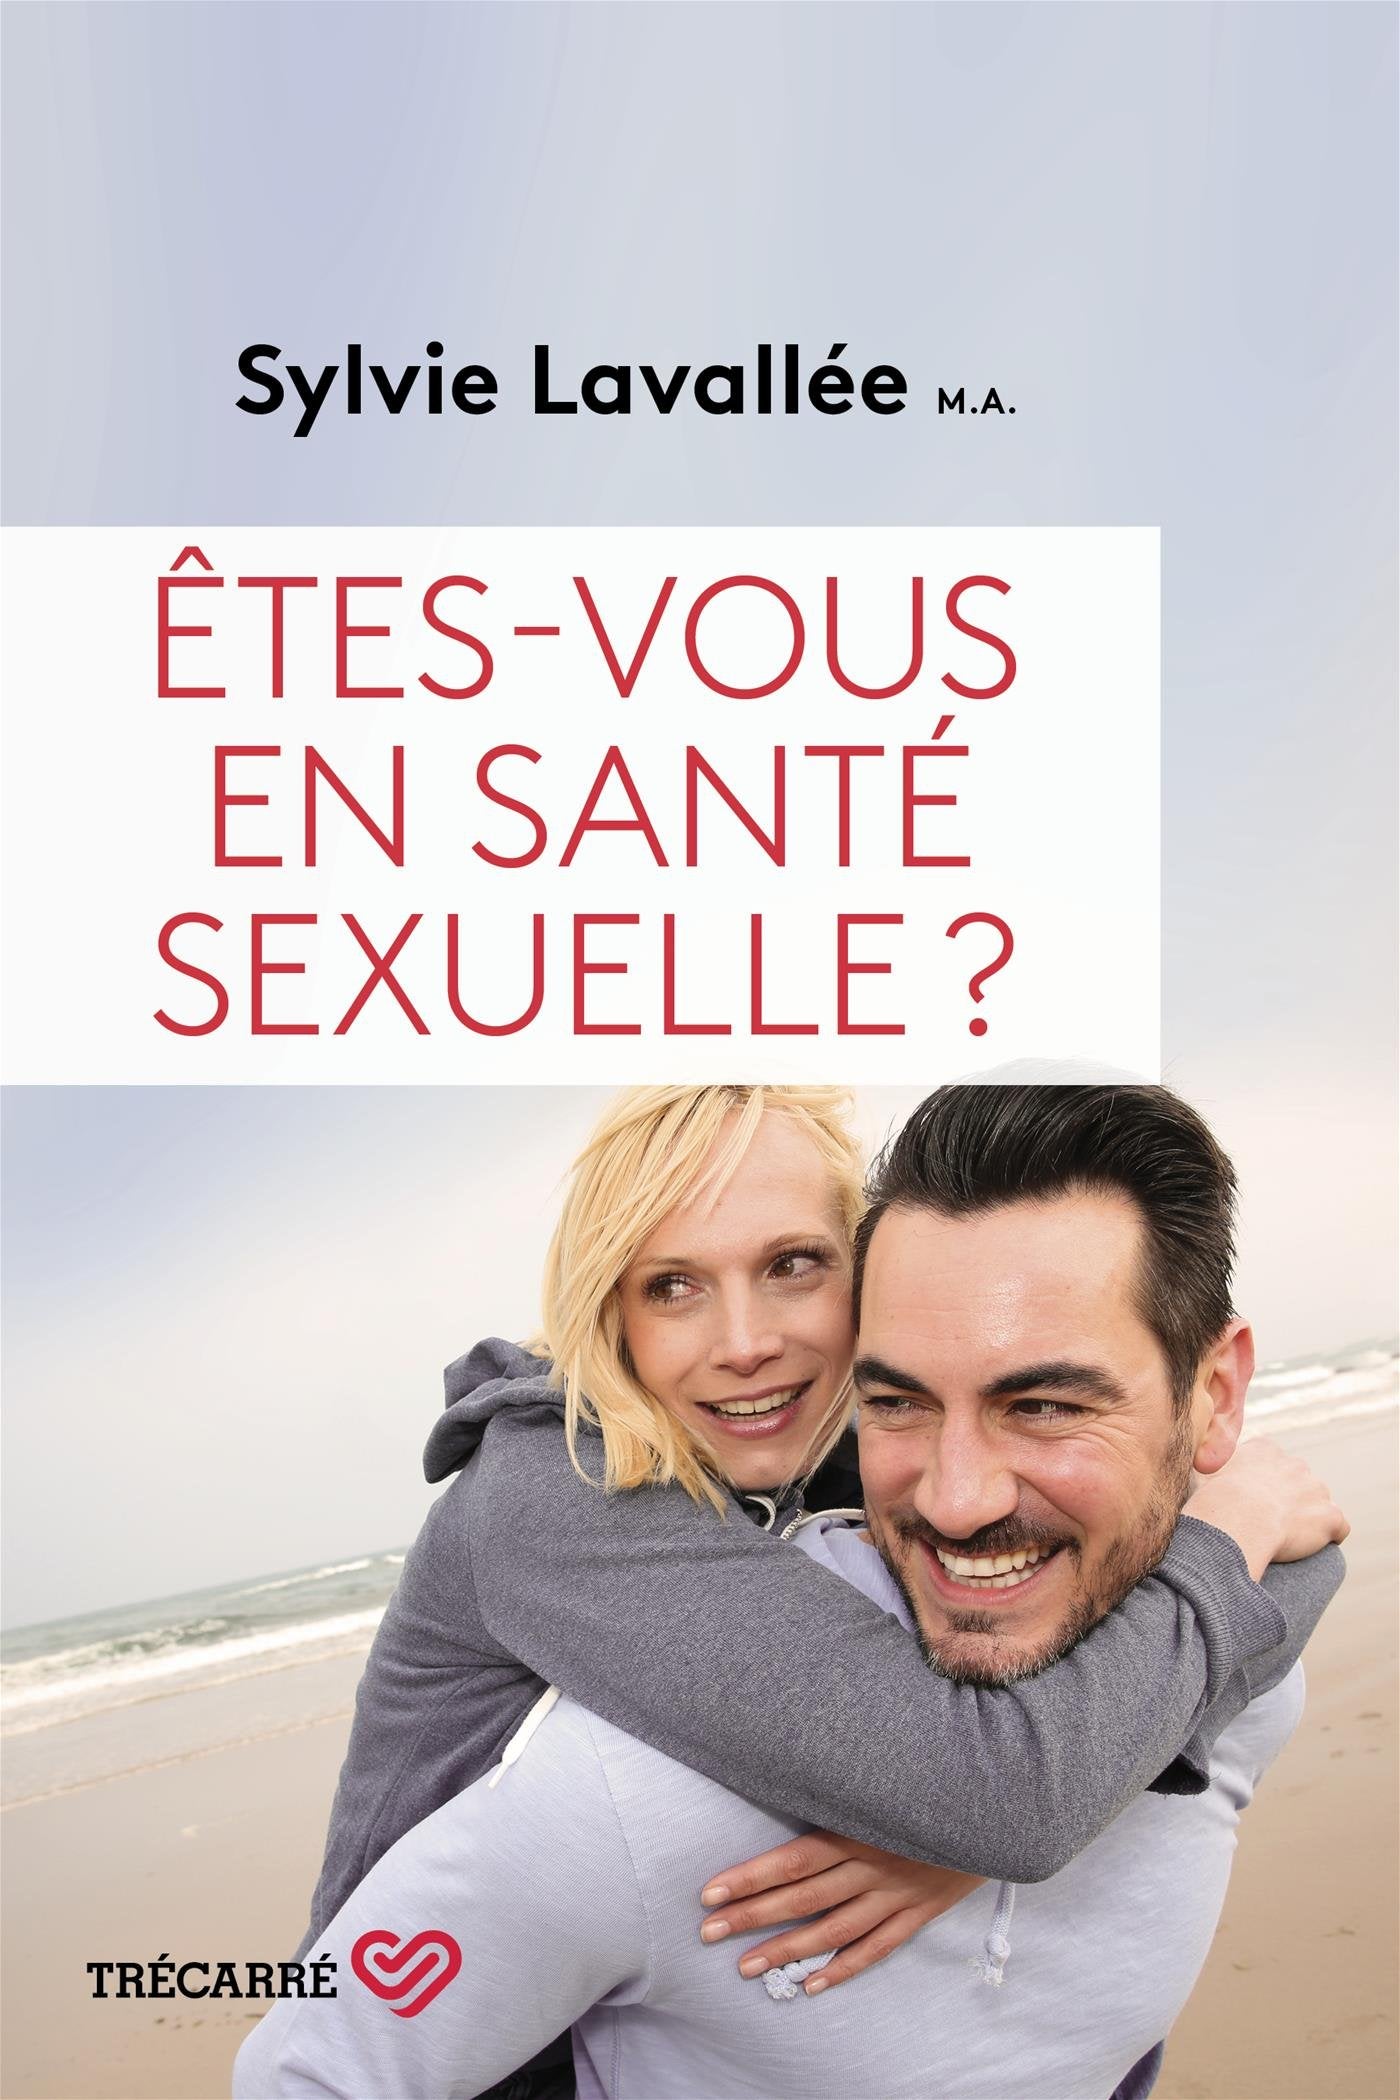 Êtes-vous en santé sexuelle? - Sylvie Lavallée